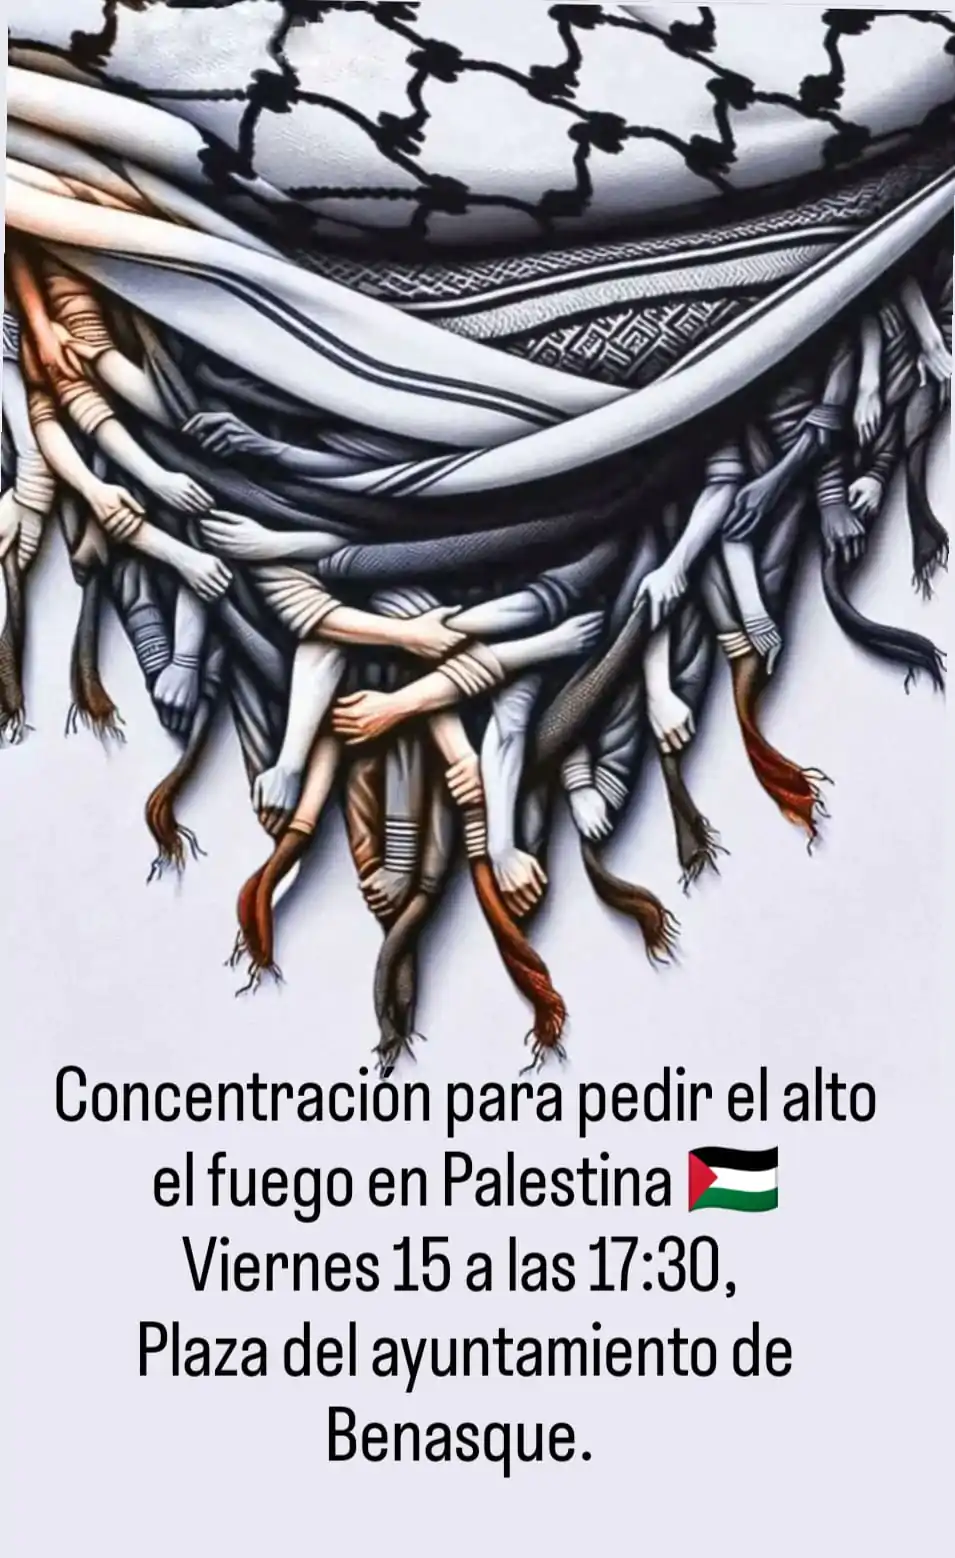 Concentración para pedir el alto el fuego en Palestina | enBenas.com